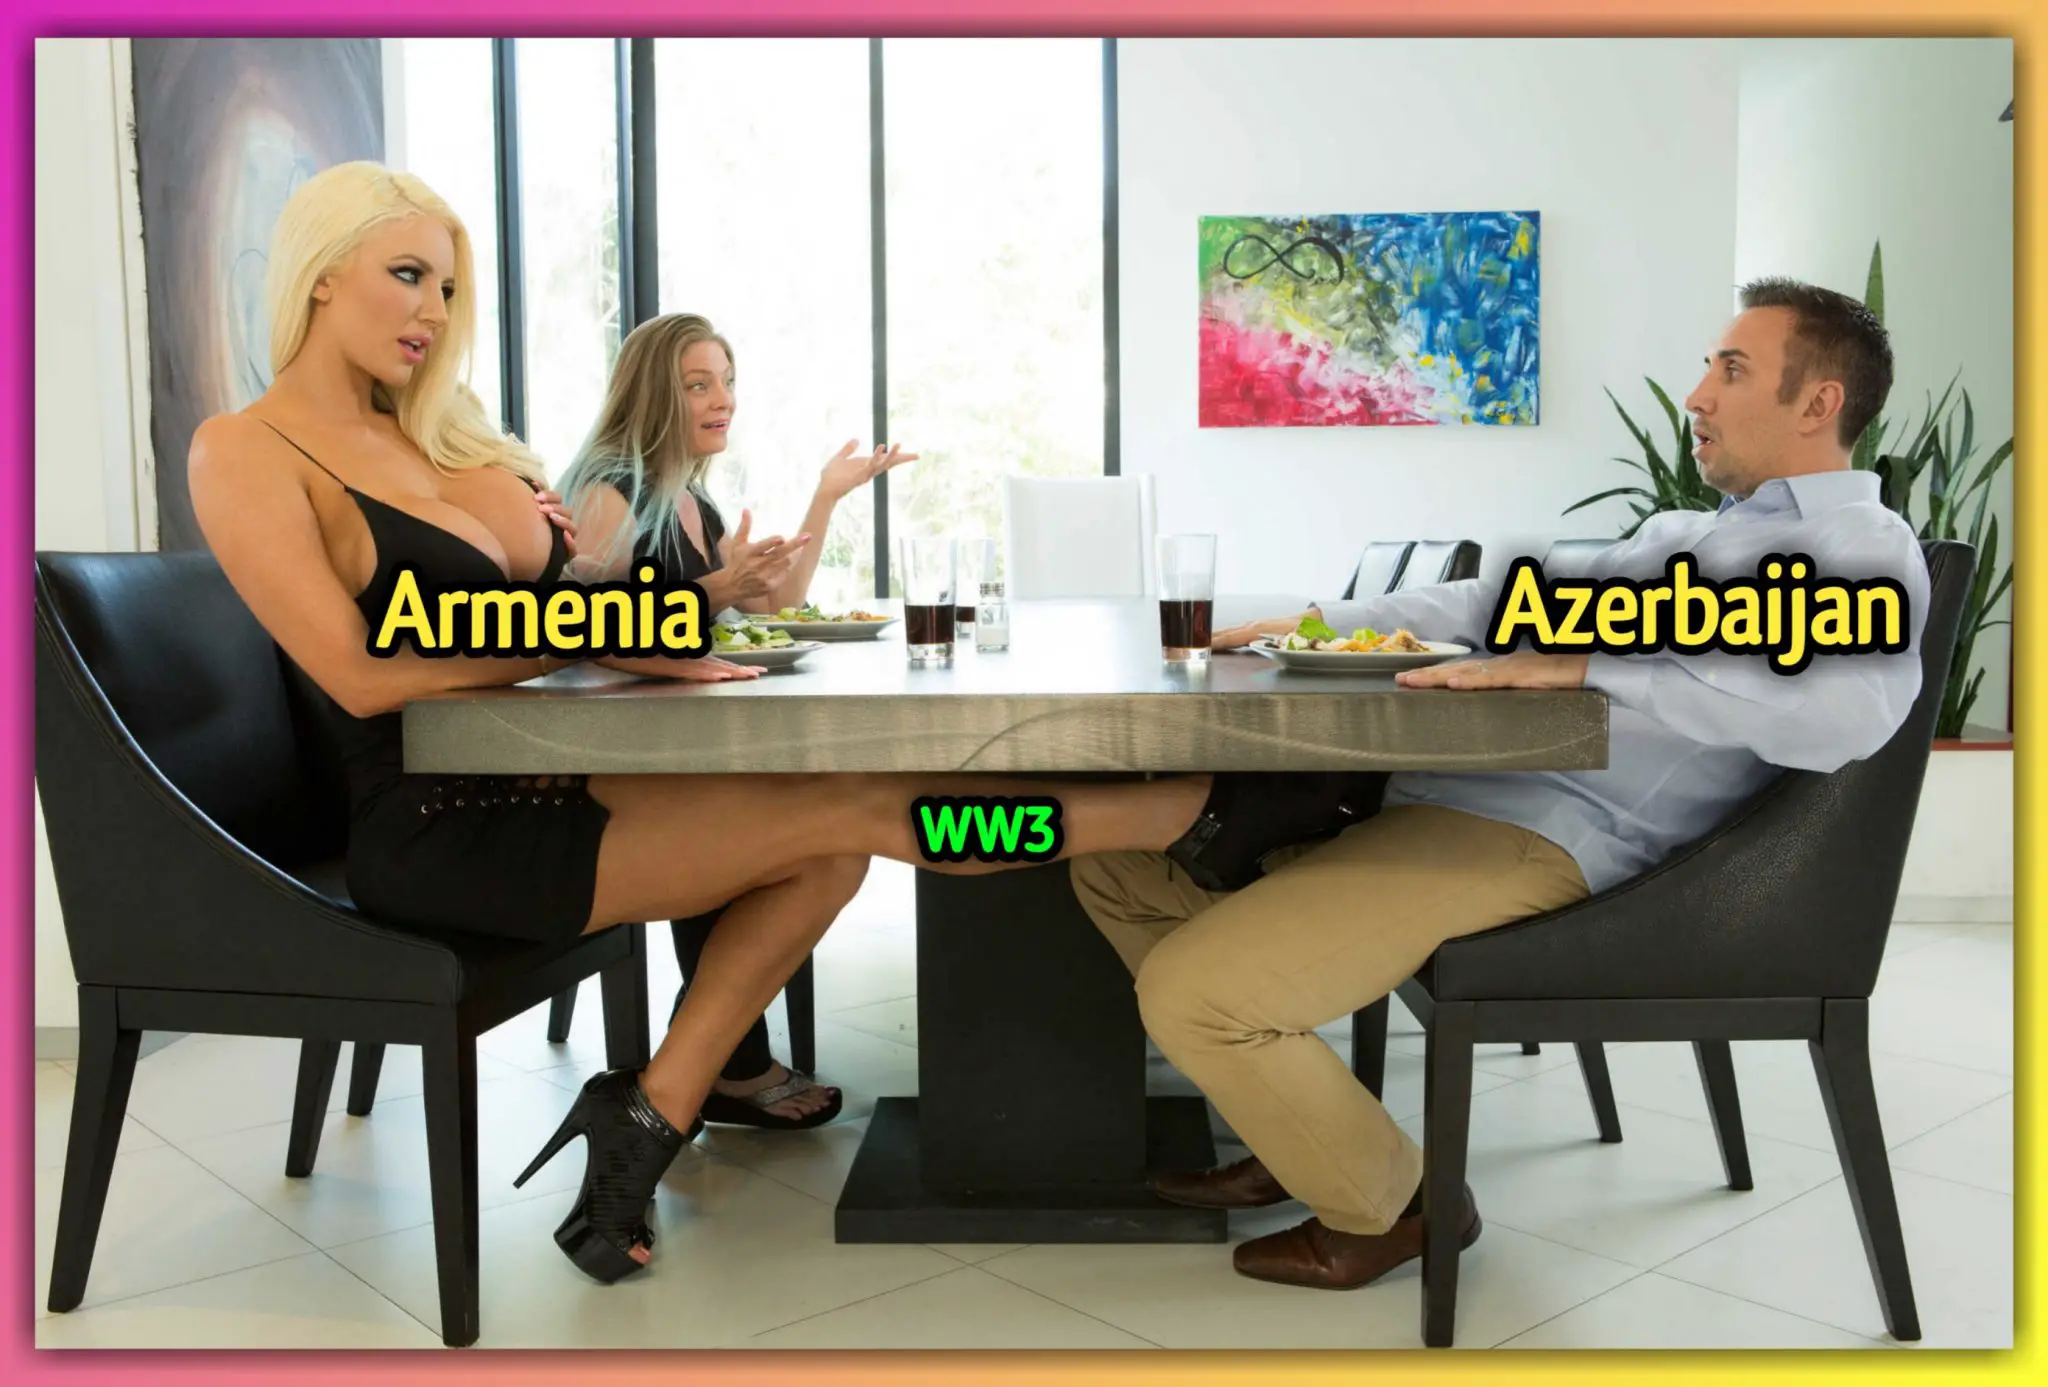 armenia vs azerbaijan meme